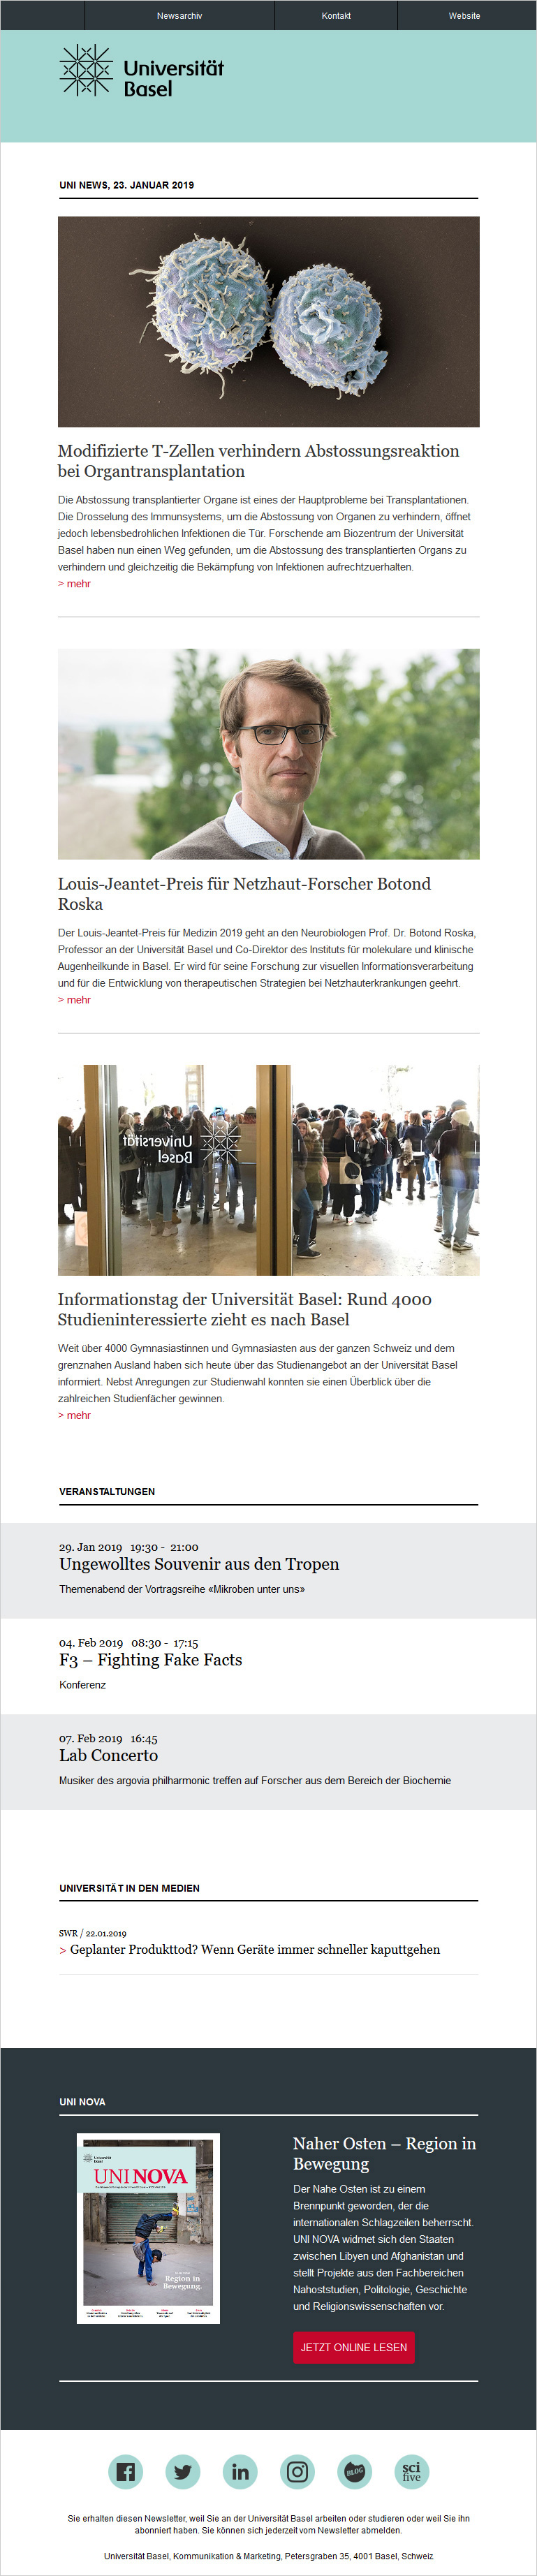 HTML Newsletter - Online CD University of Basel